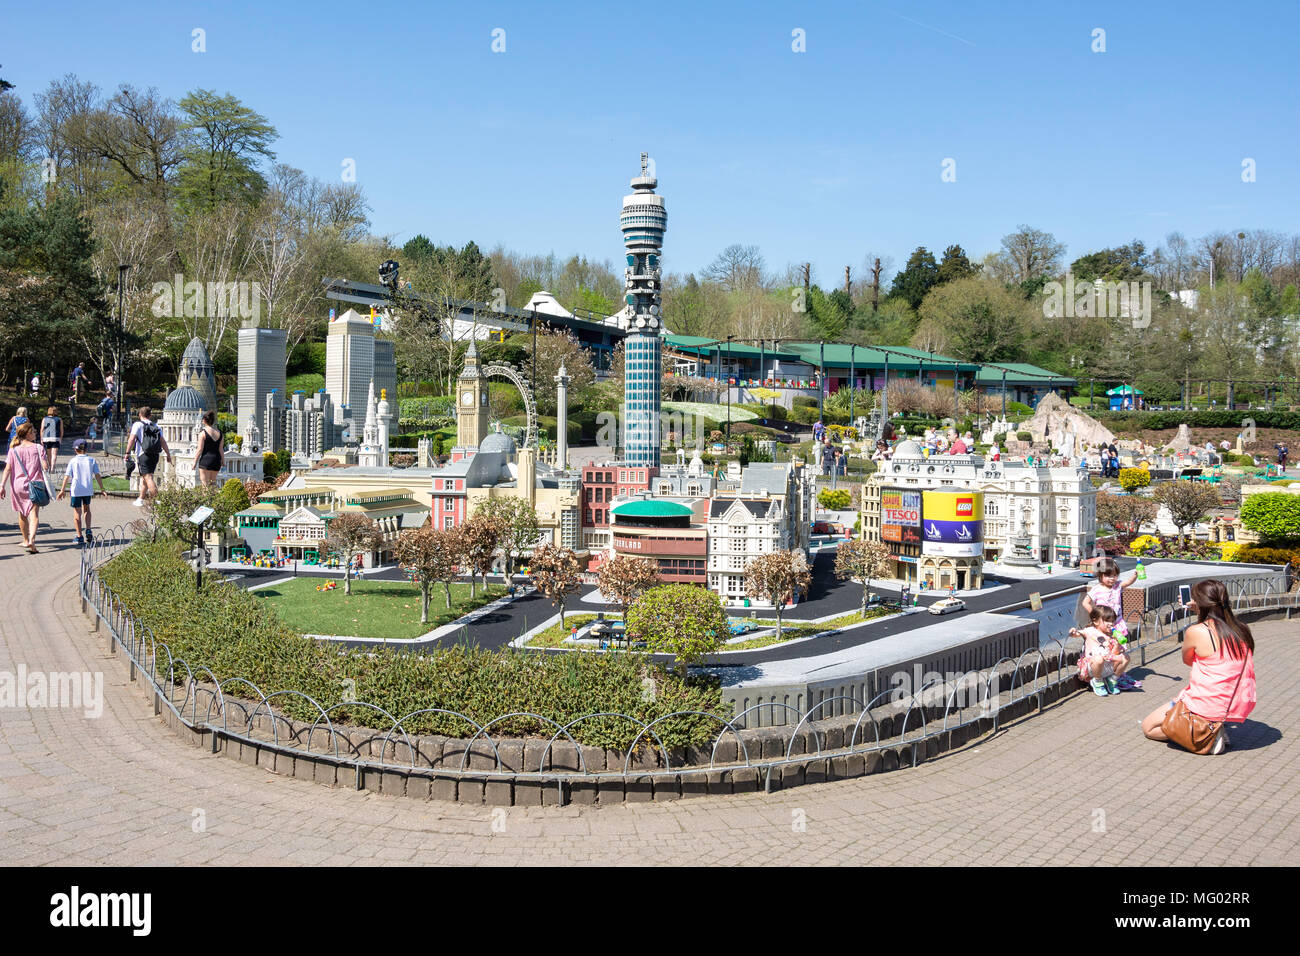 Centre de Londres des modèles à Miniland, Legoland Windsor Resort, Windsor, Berkshire, Angleterre, Royaume-Uni Banque D'Images